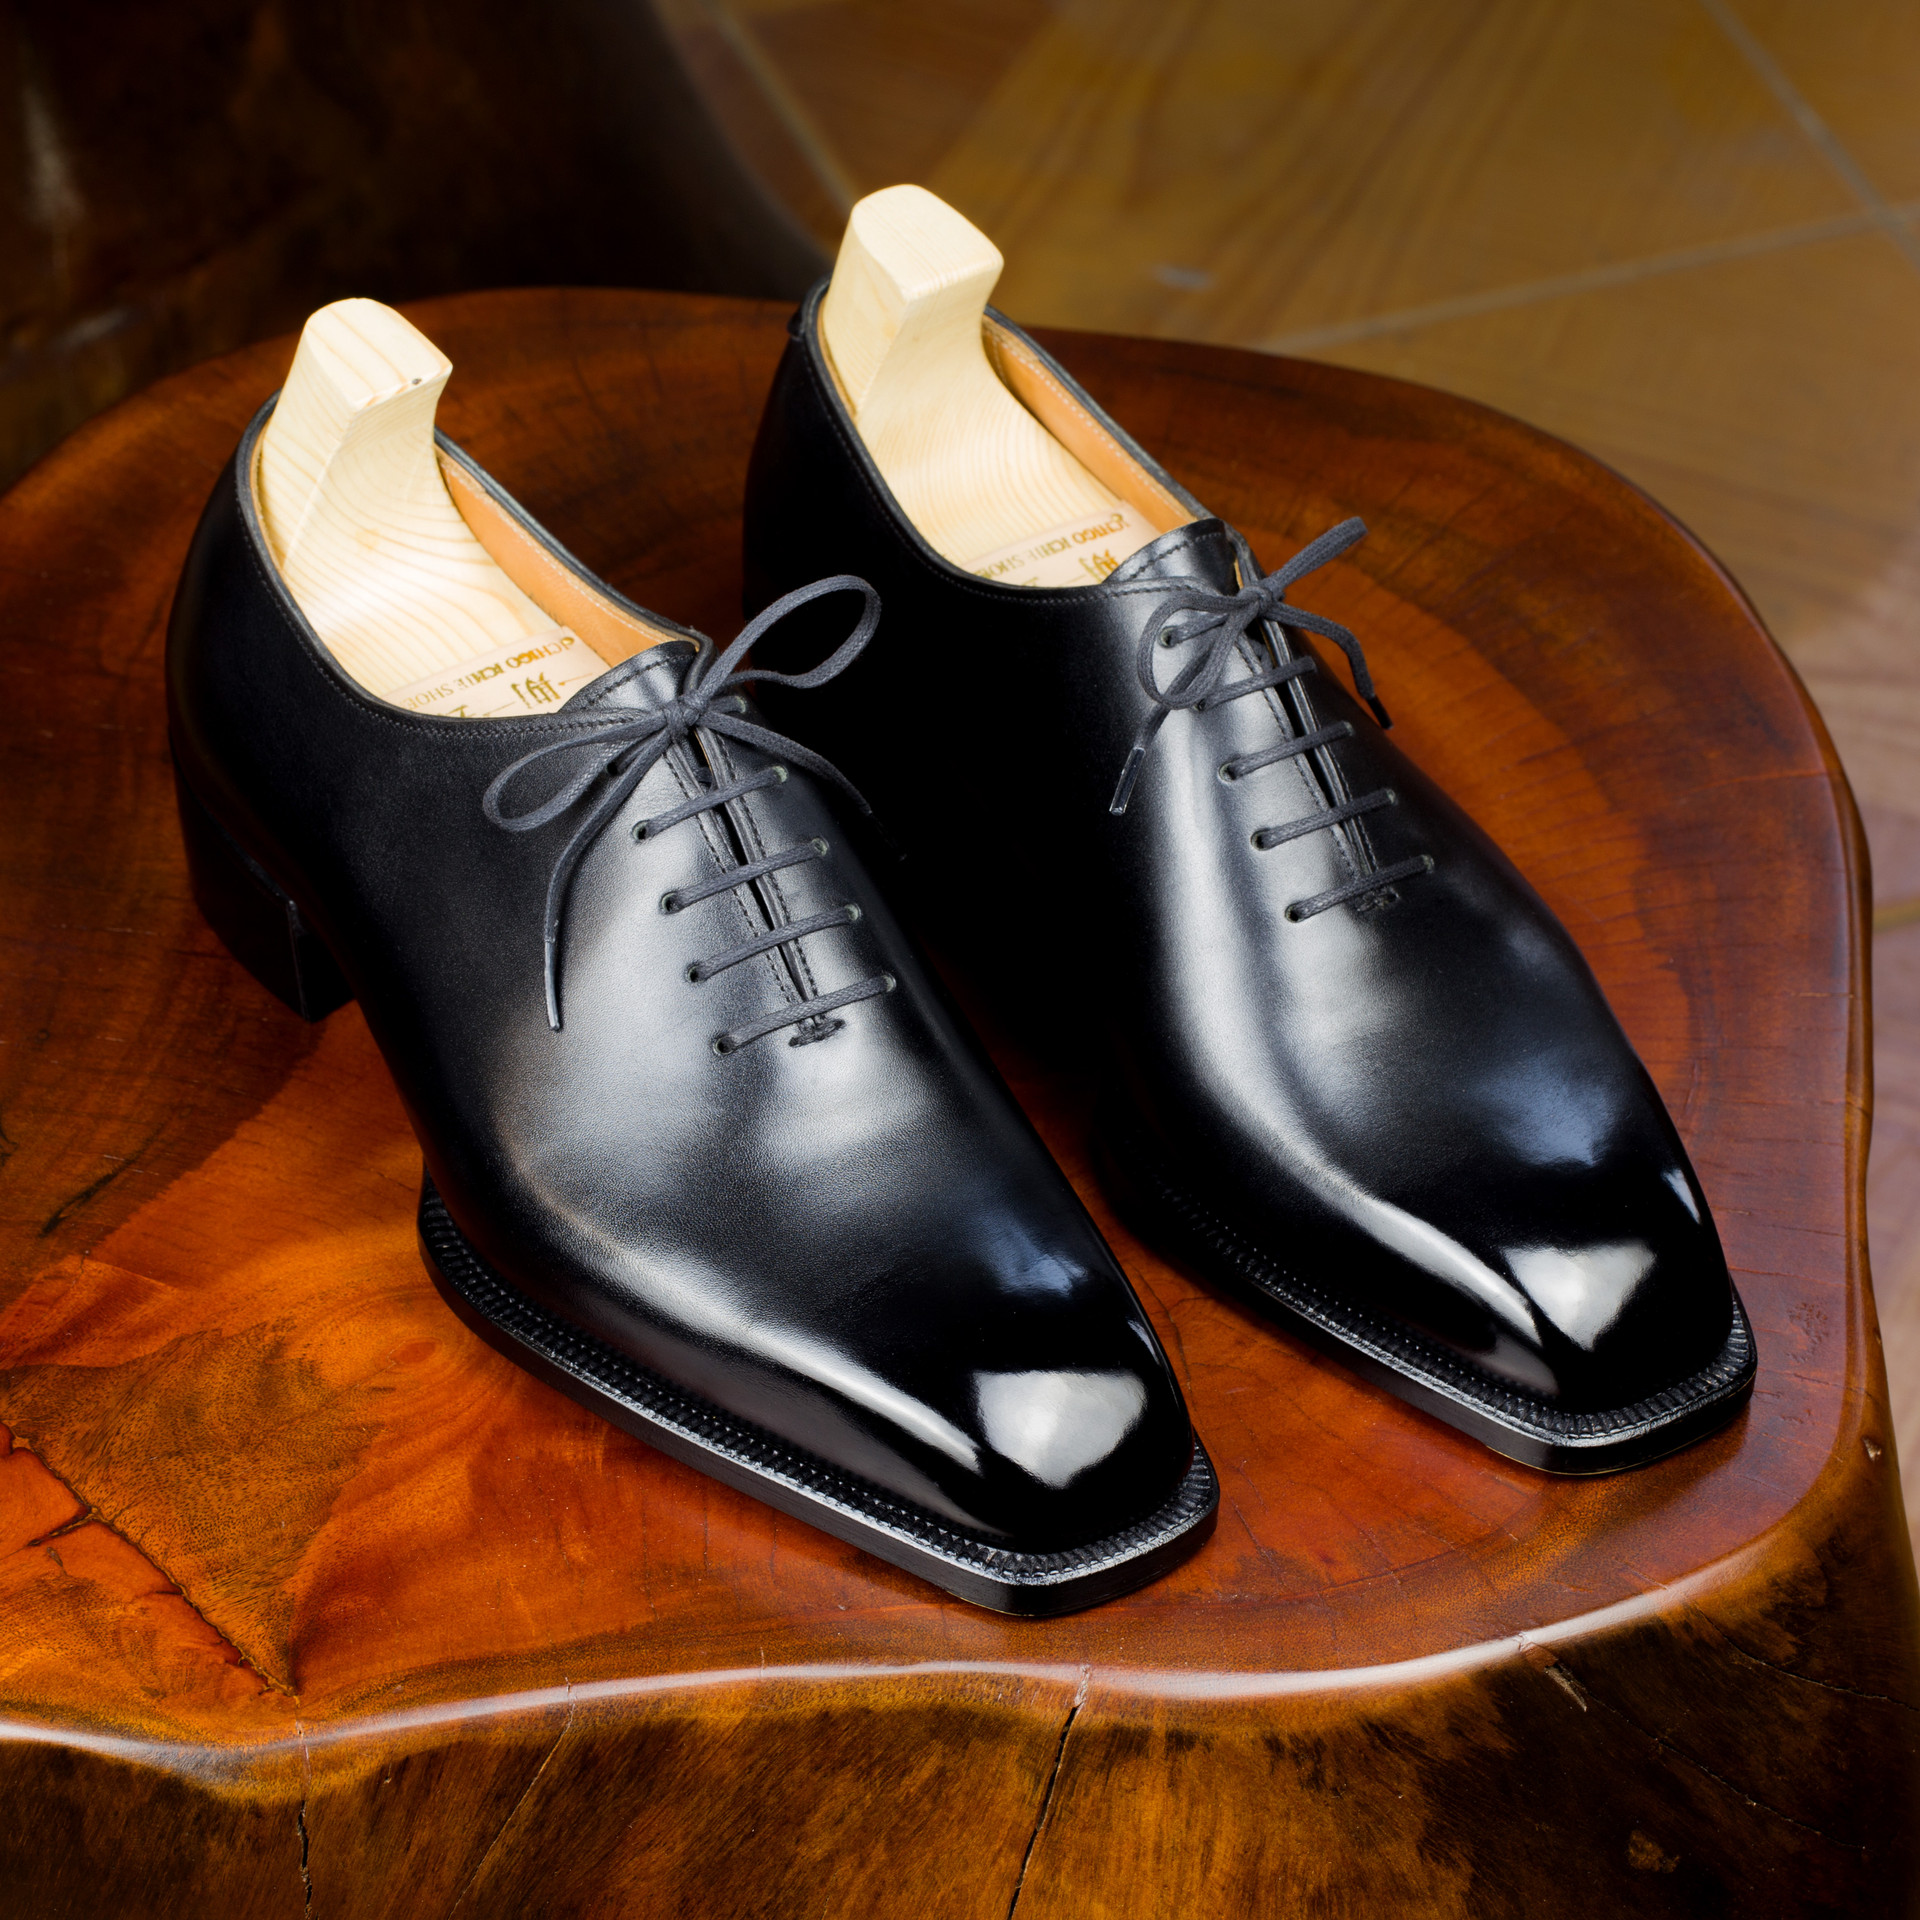 Chàng trai bỏ việc kỹ sư lương nghìn USD để làm thợ đóng giày: Không quảng cáo rầm rộ, giày giá nghìn USD vẫn “đắt hàng”, khẳng định làm vì đam mê - Ảnh 3.